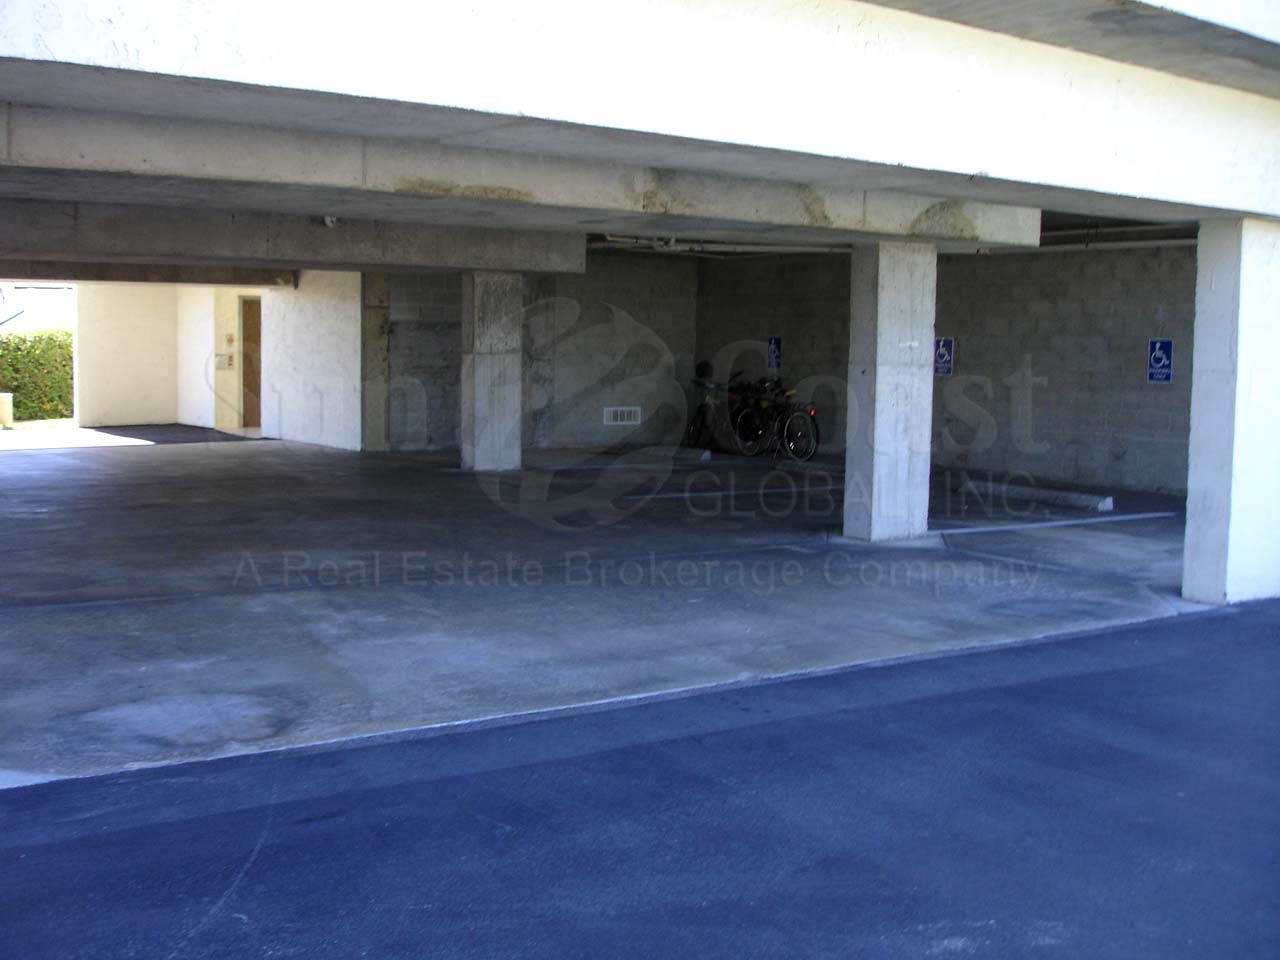 Vanderbilt Palms Sub-Building Parking